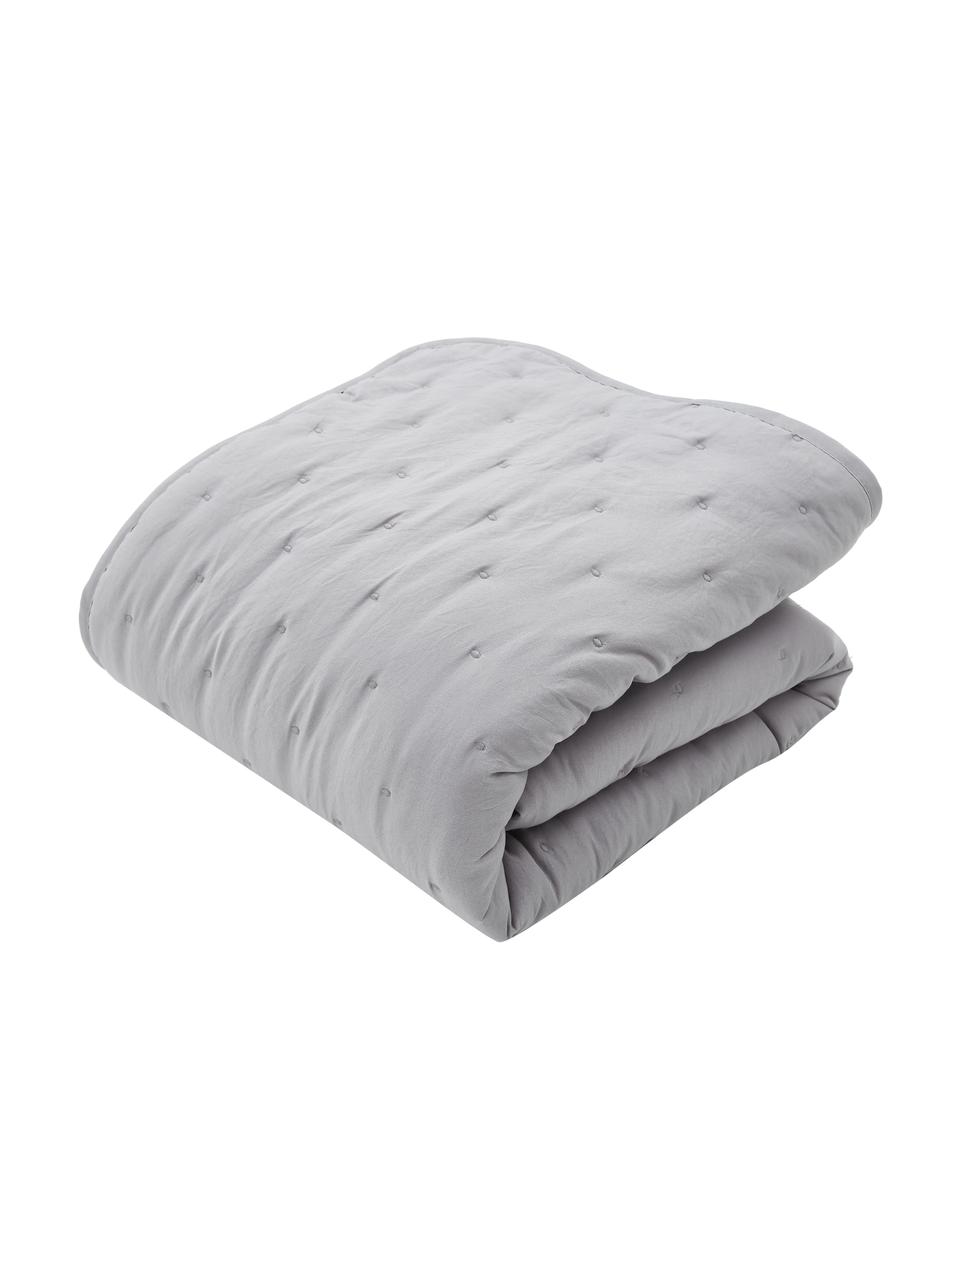 Couvre-lit gris clair matelassé Wida, 100 % polyester, Gris clair, larg. 180 x long. 260 cm (pour lits jusqu'à 140 x 200 cm)